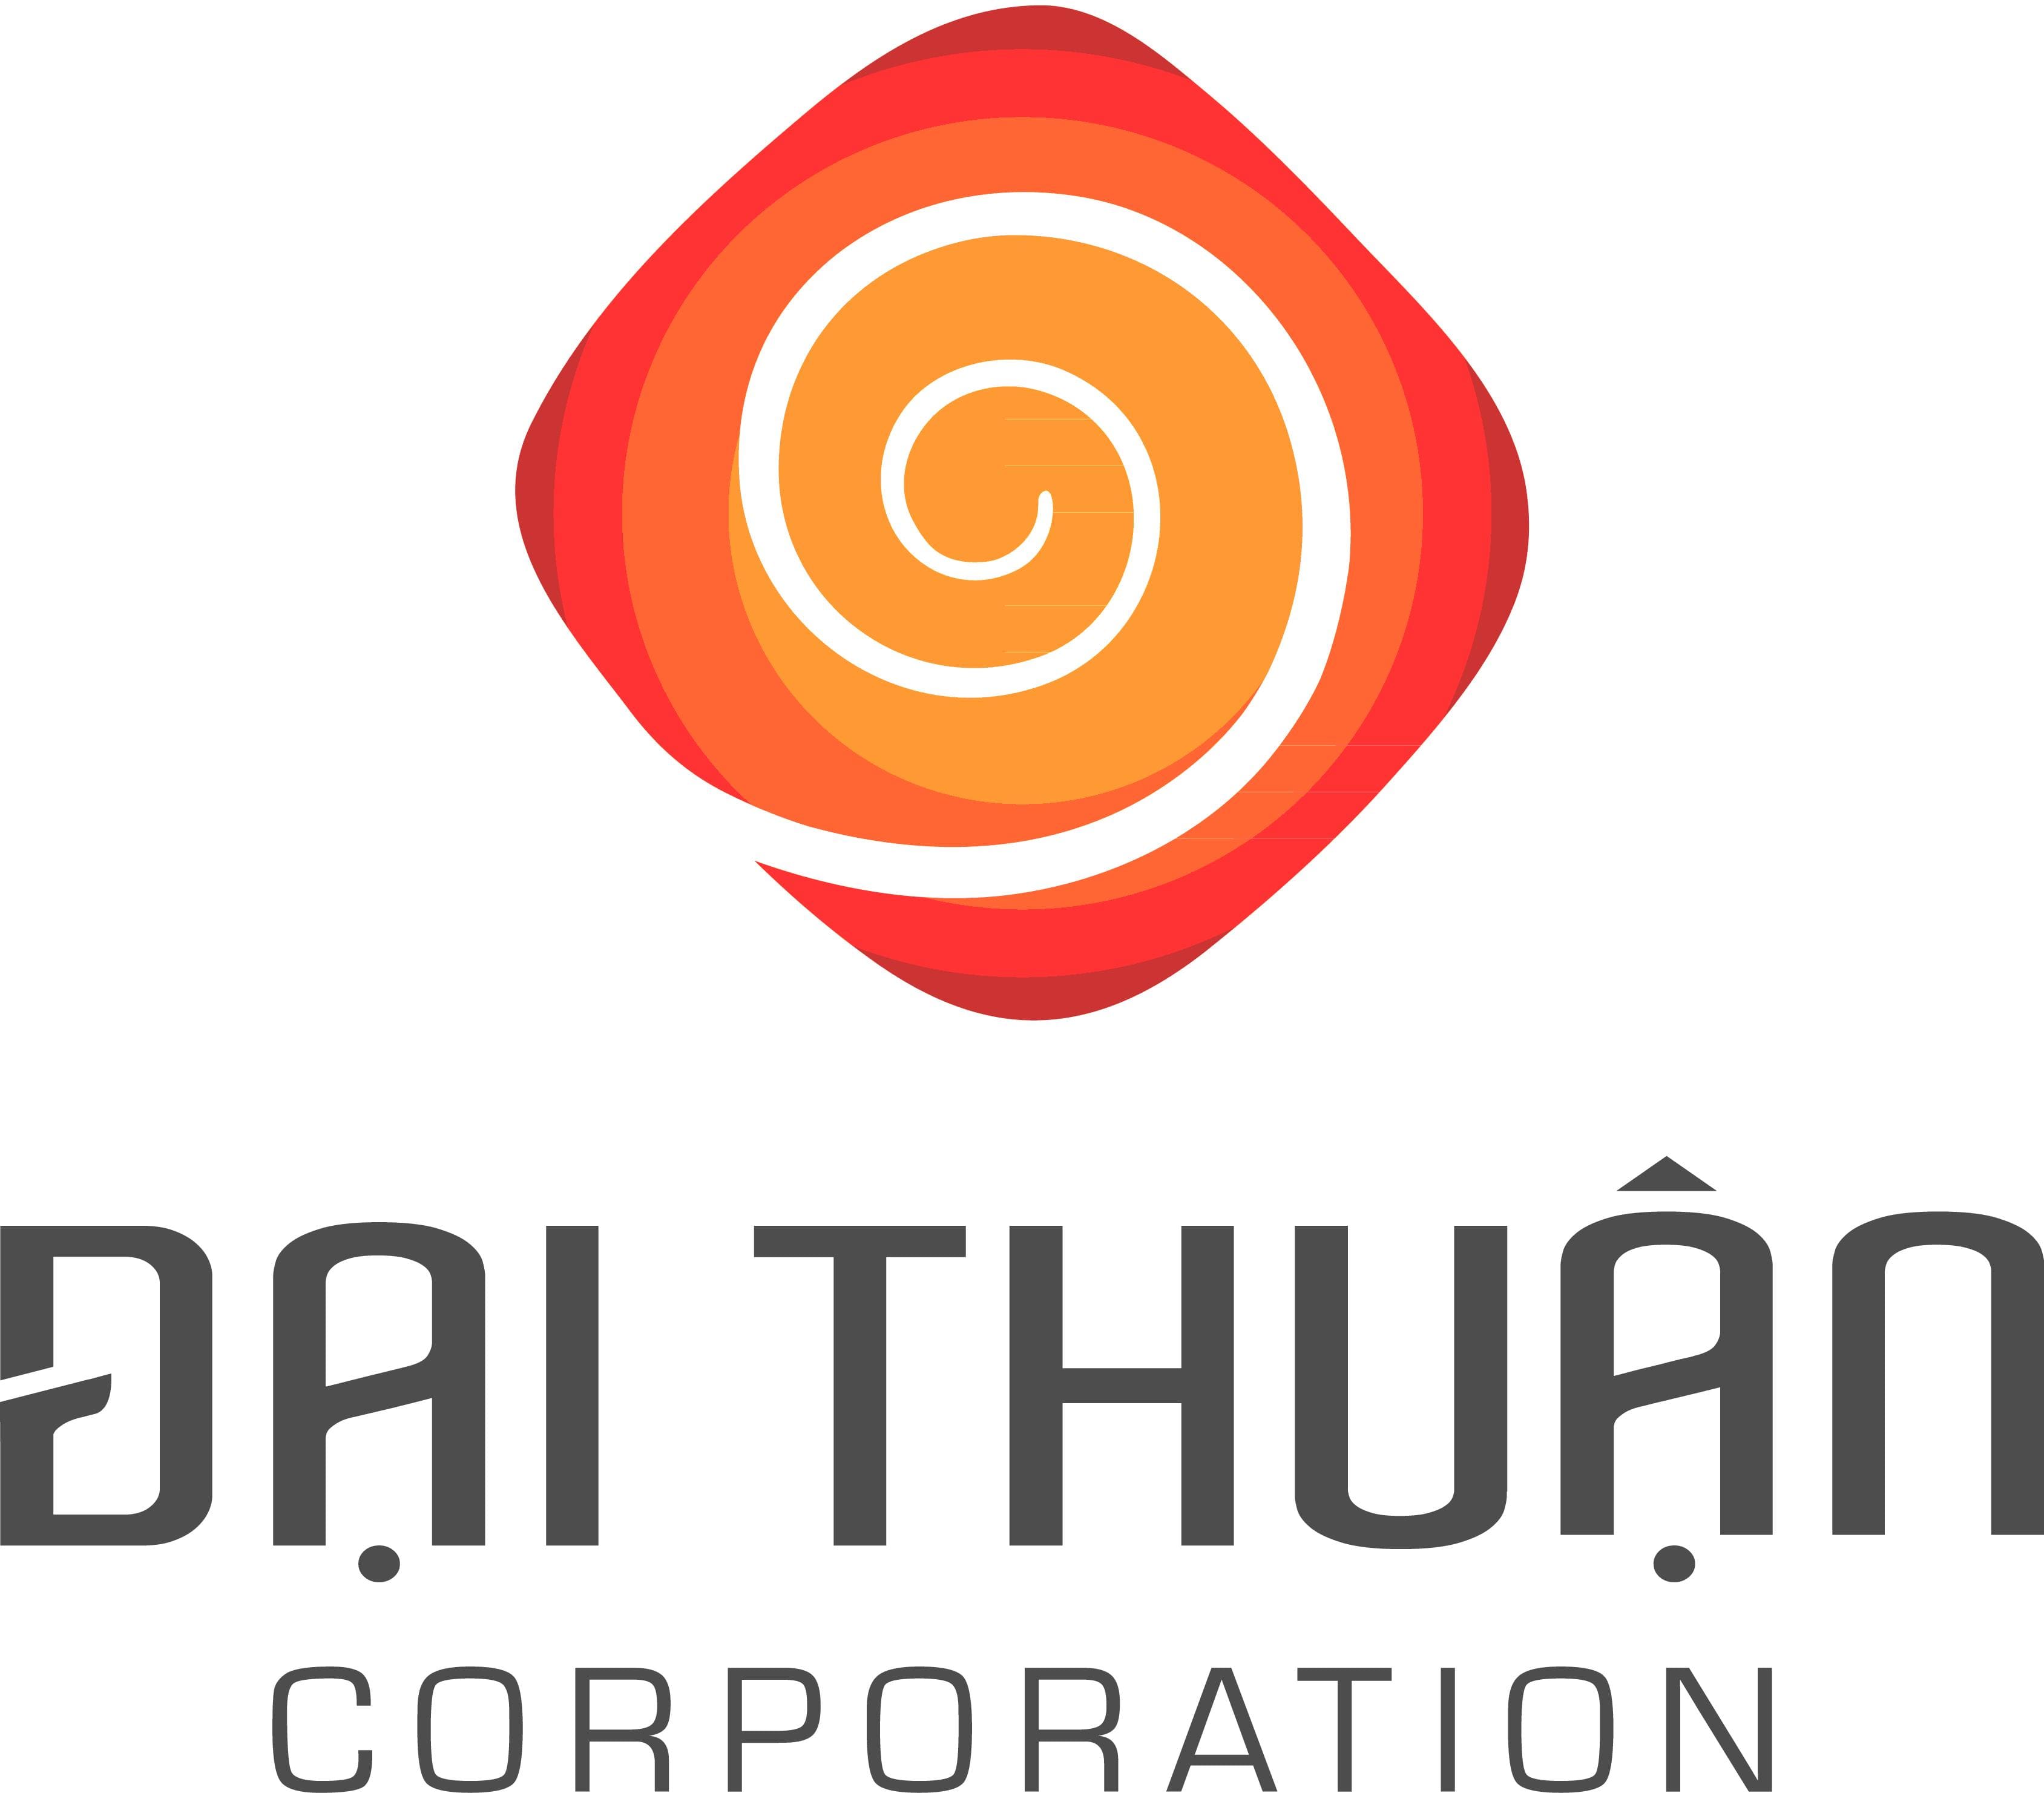 Công ty Cổ Phần Thực Phẩm Đại Thuận